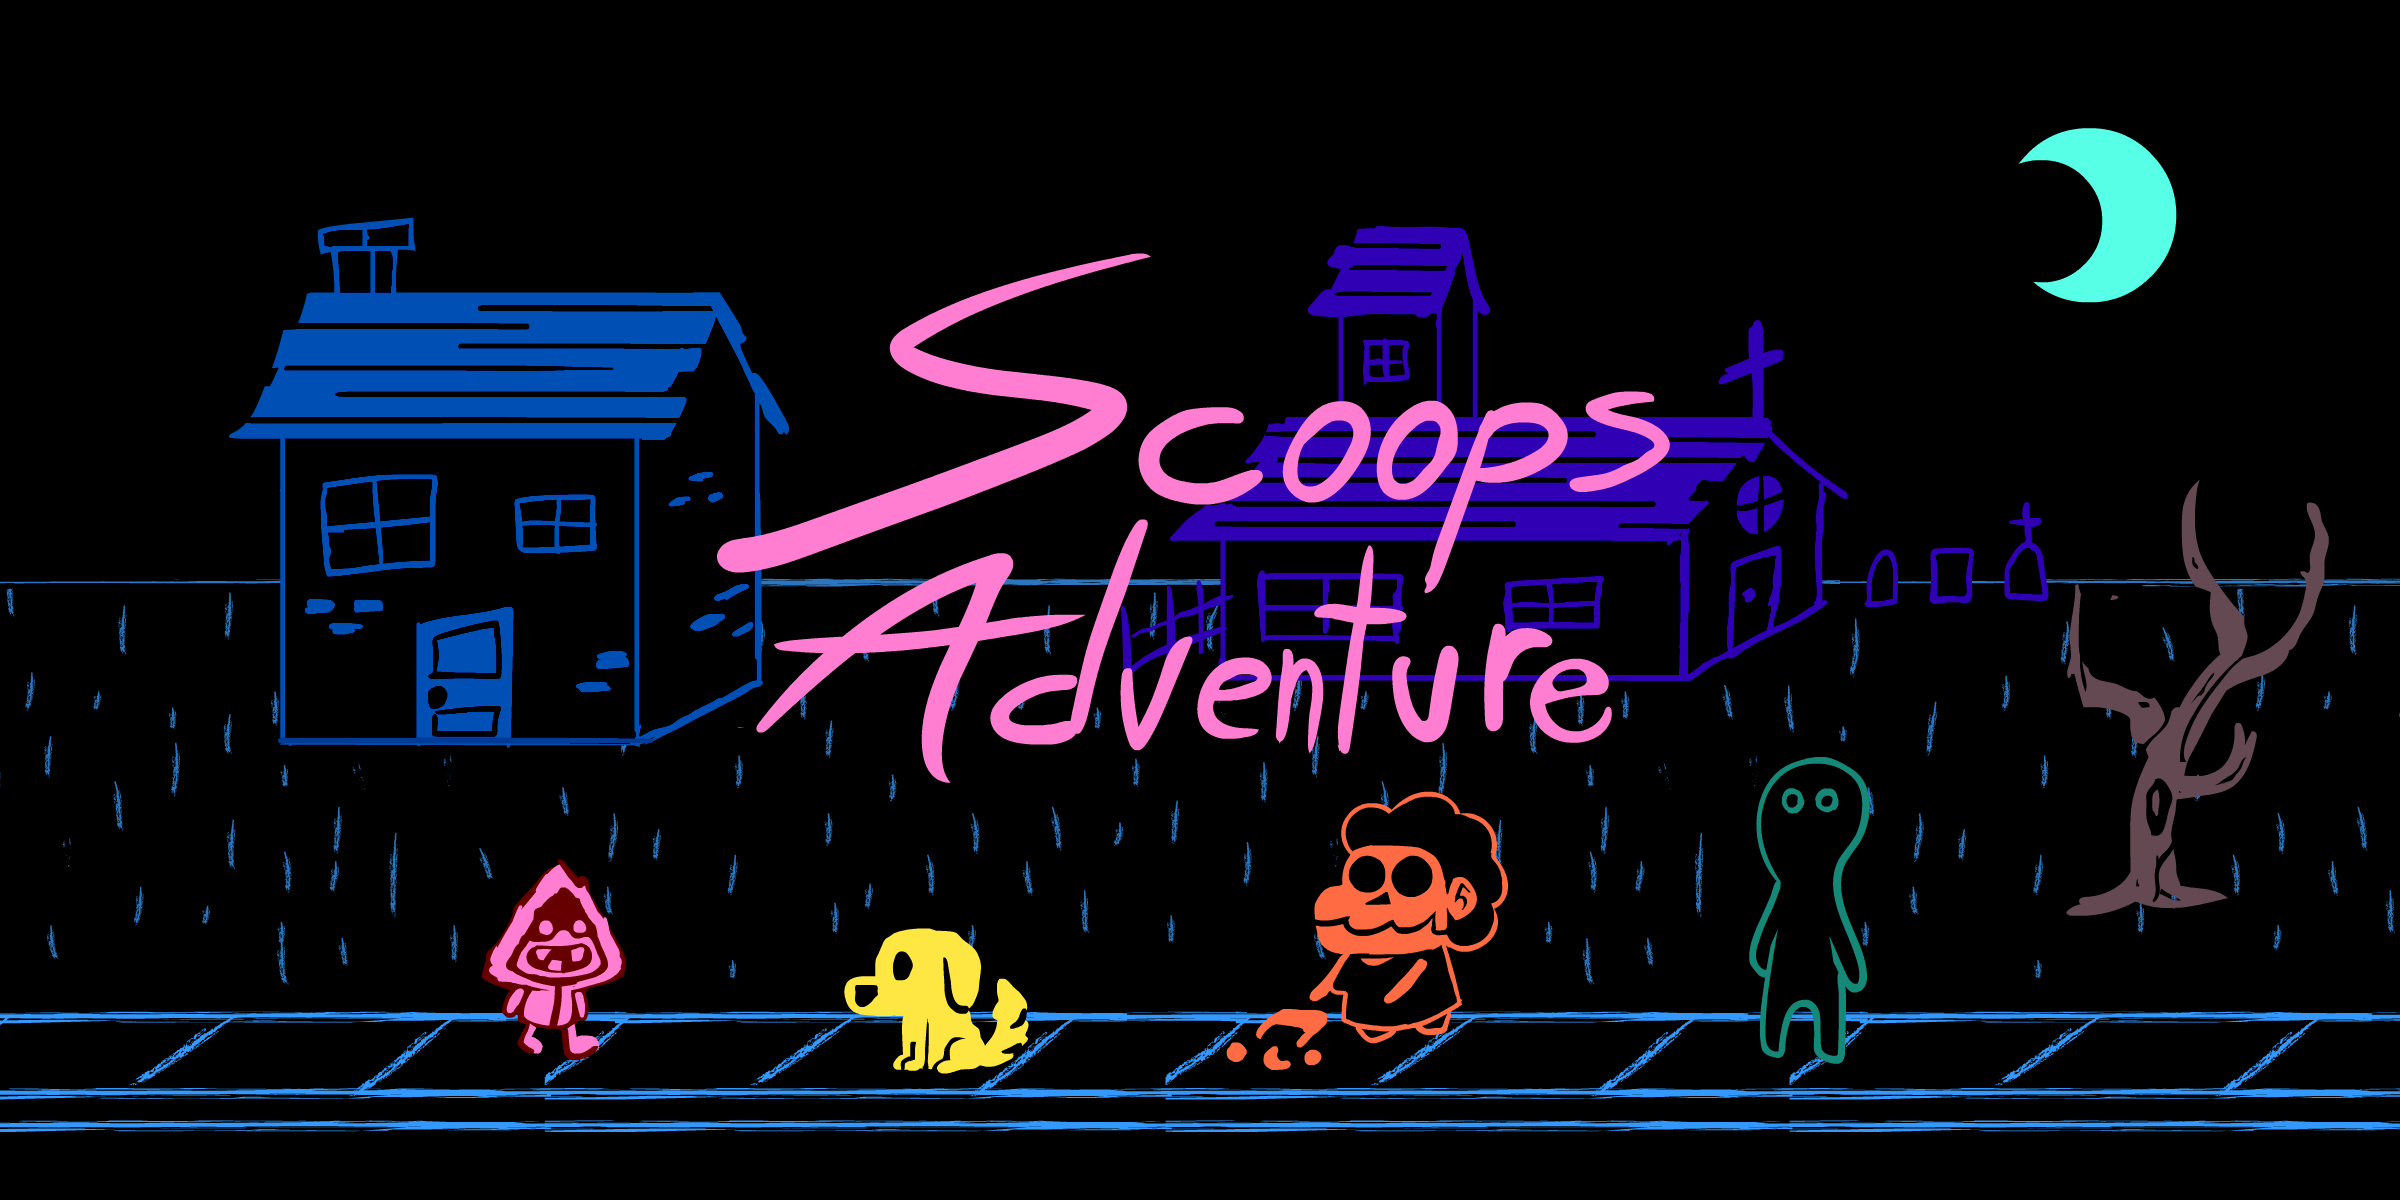 Scoop's Adventure